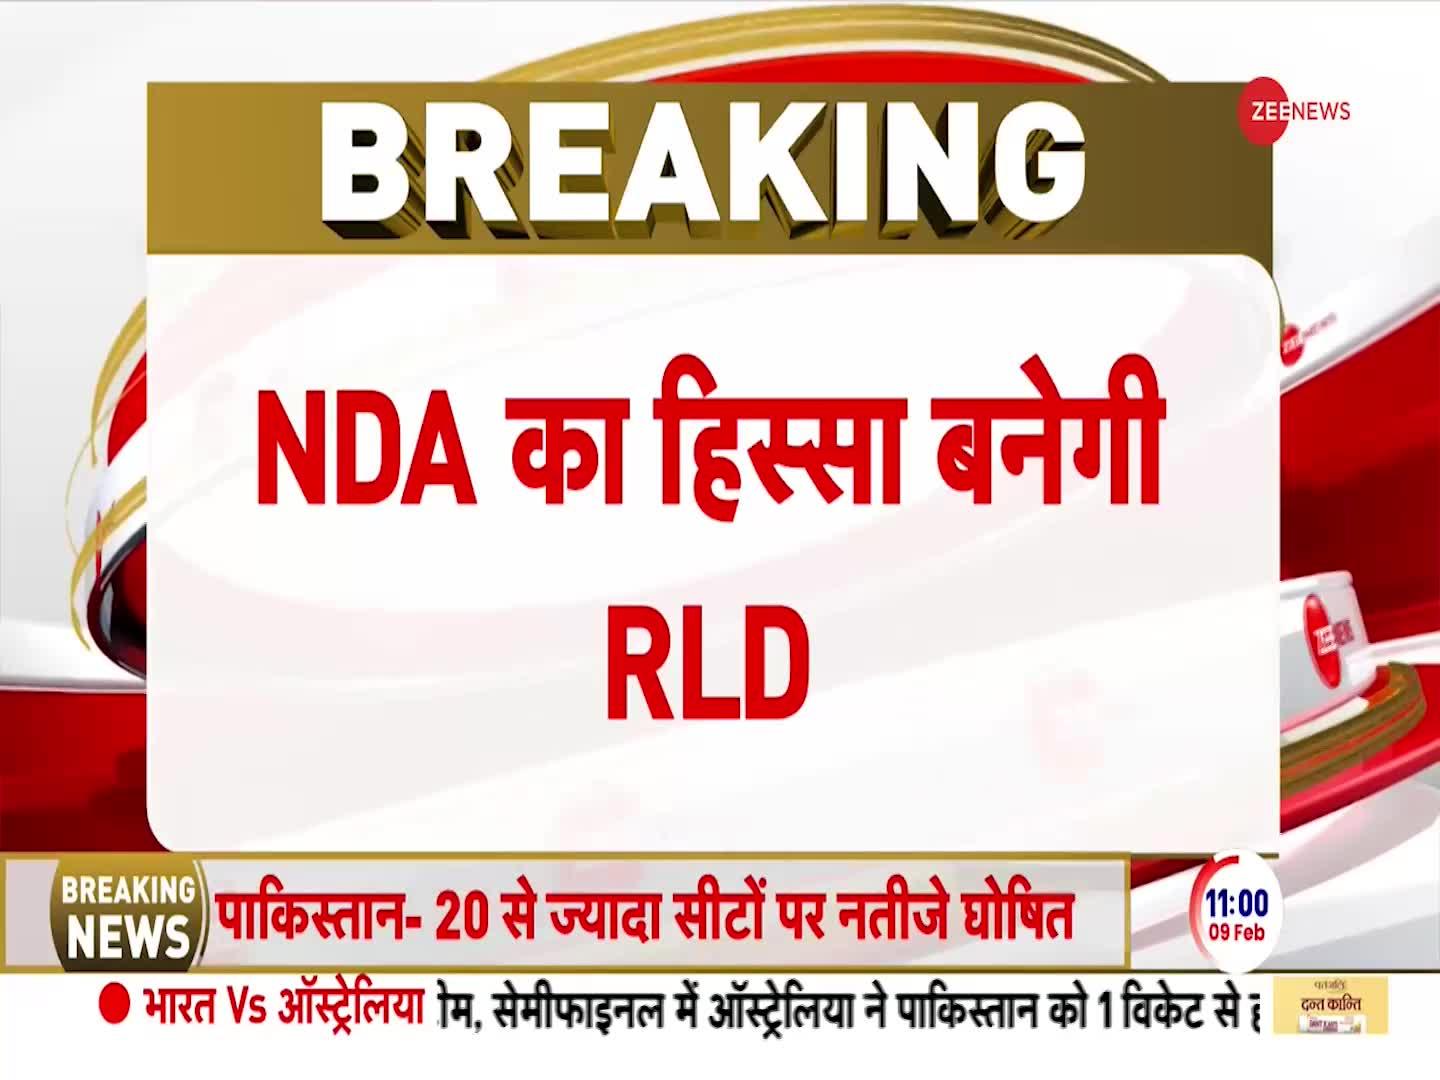 UP Breaking News: 2 लोकसभा सीट पर चुनाव लड़ेगी RLD